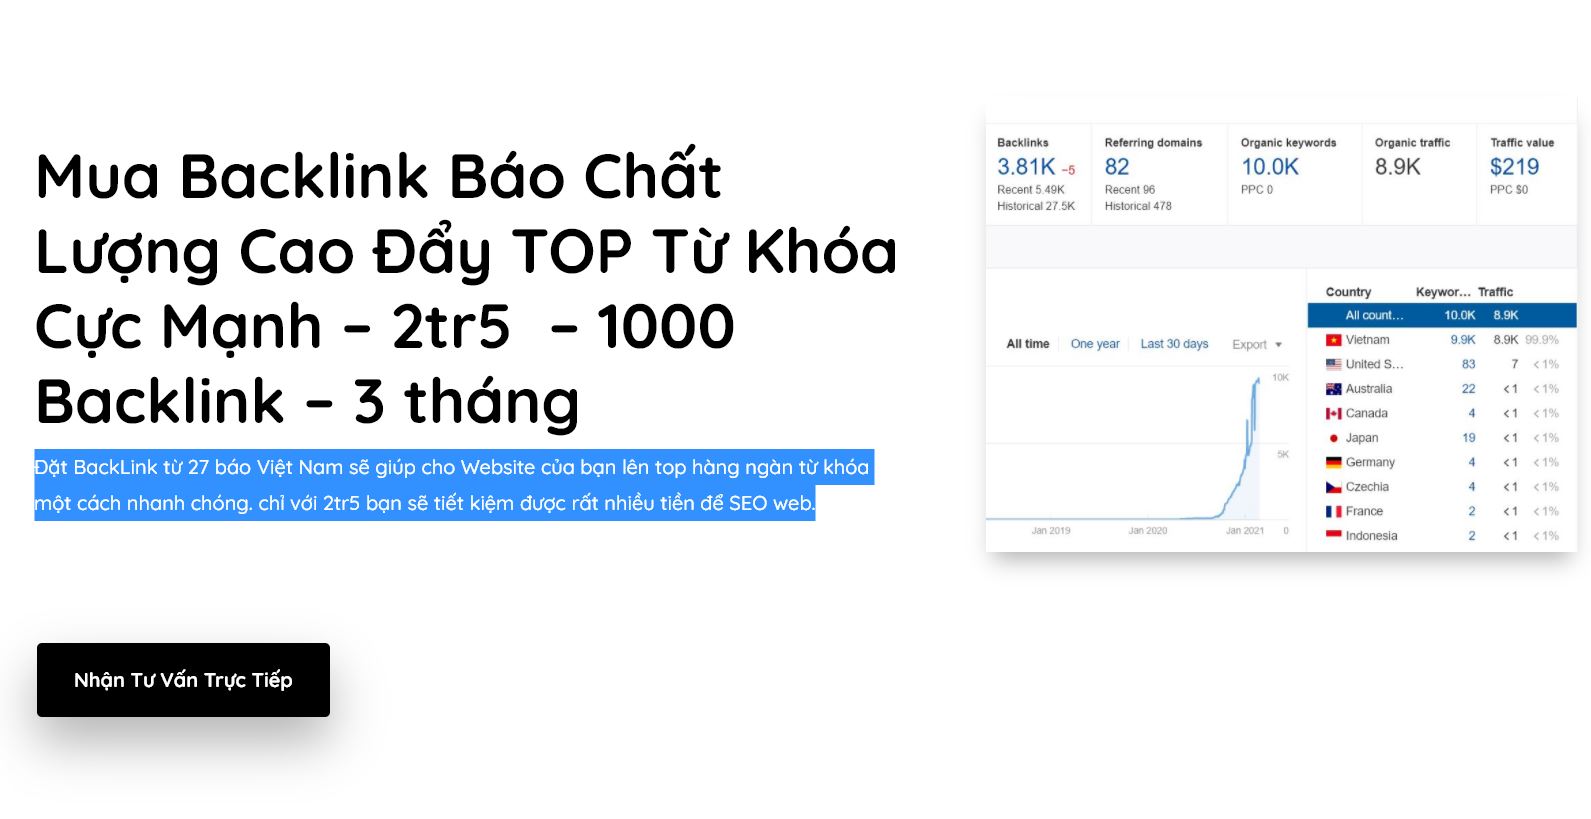 Mua Backlink Báo Việt Nam - Gói 1000 Link Giá 2tr5 Đẩy TOP